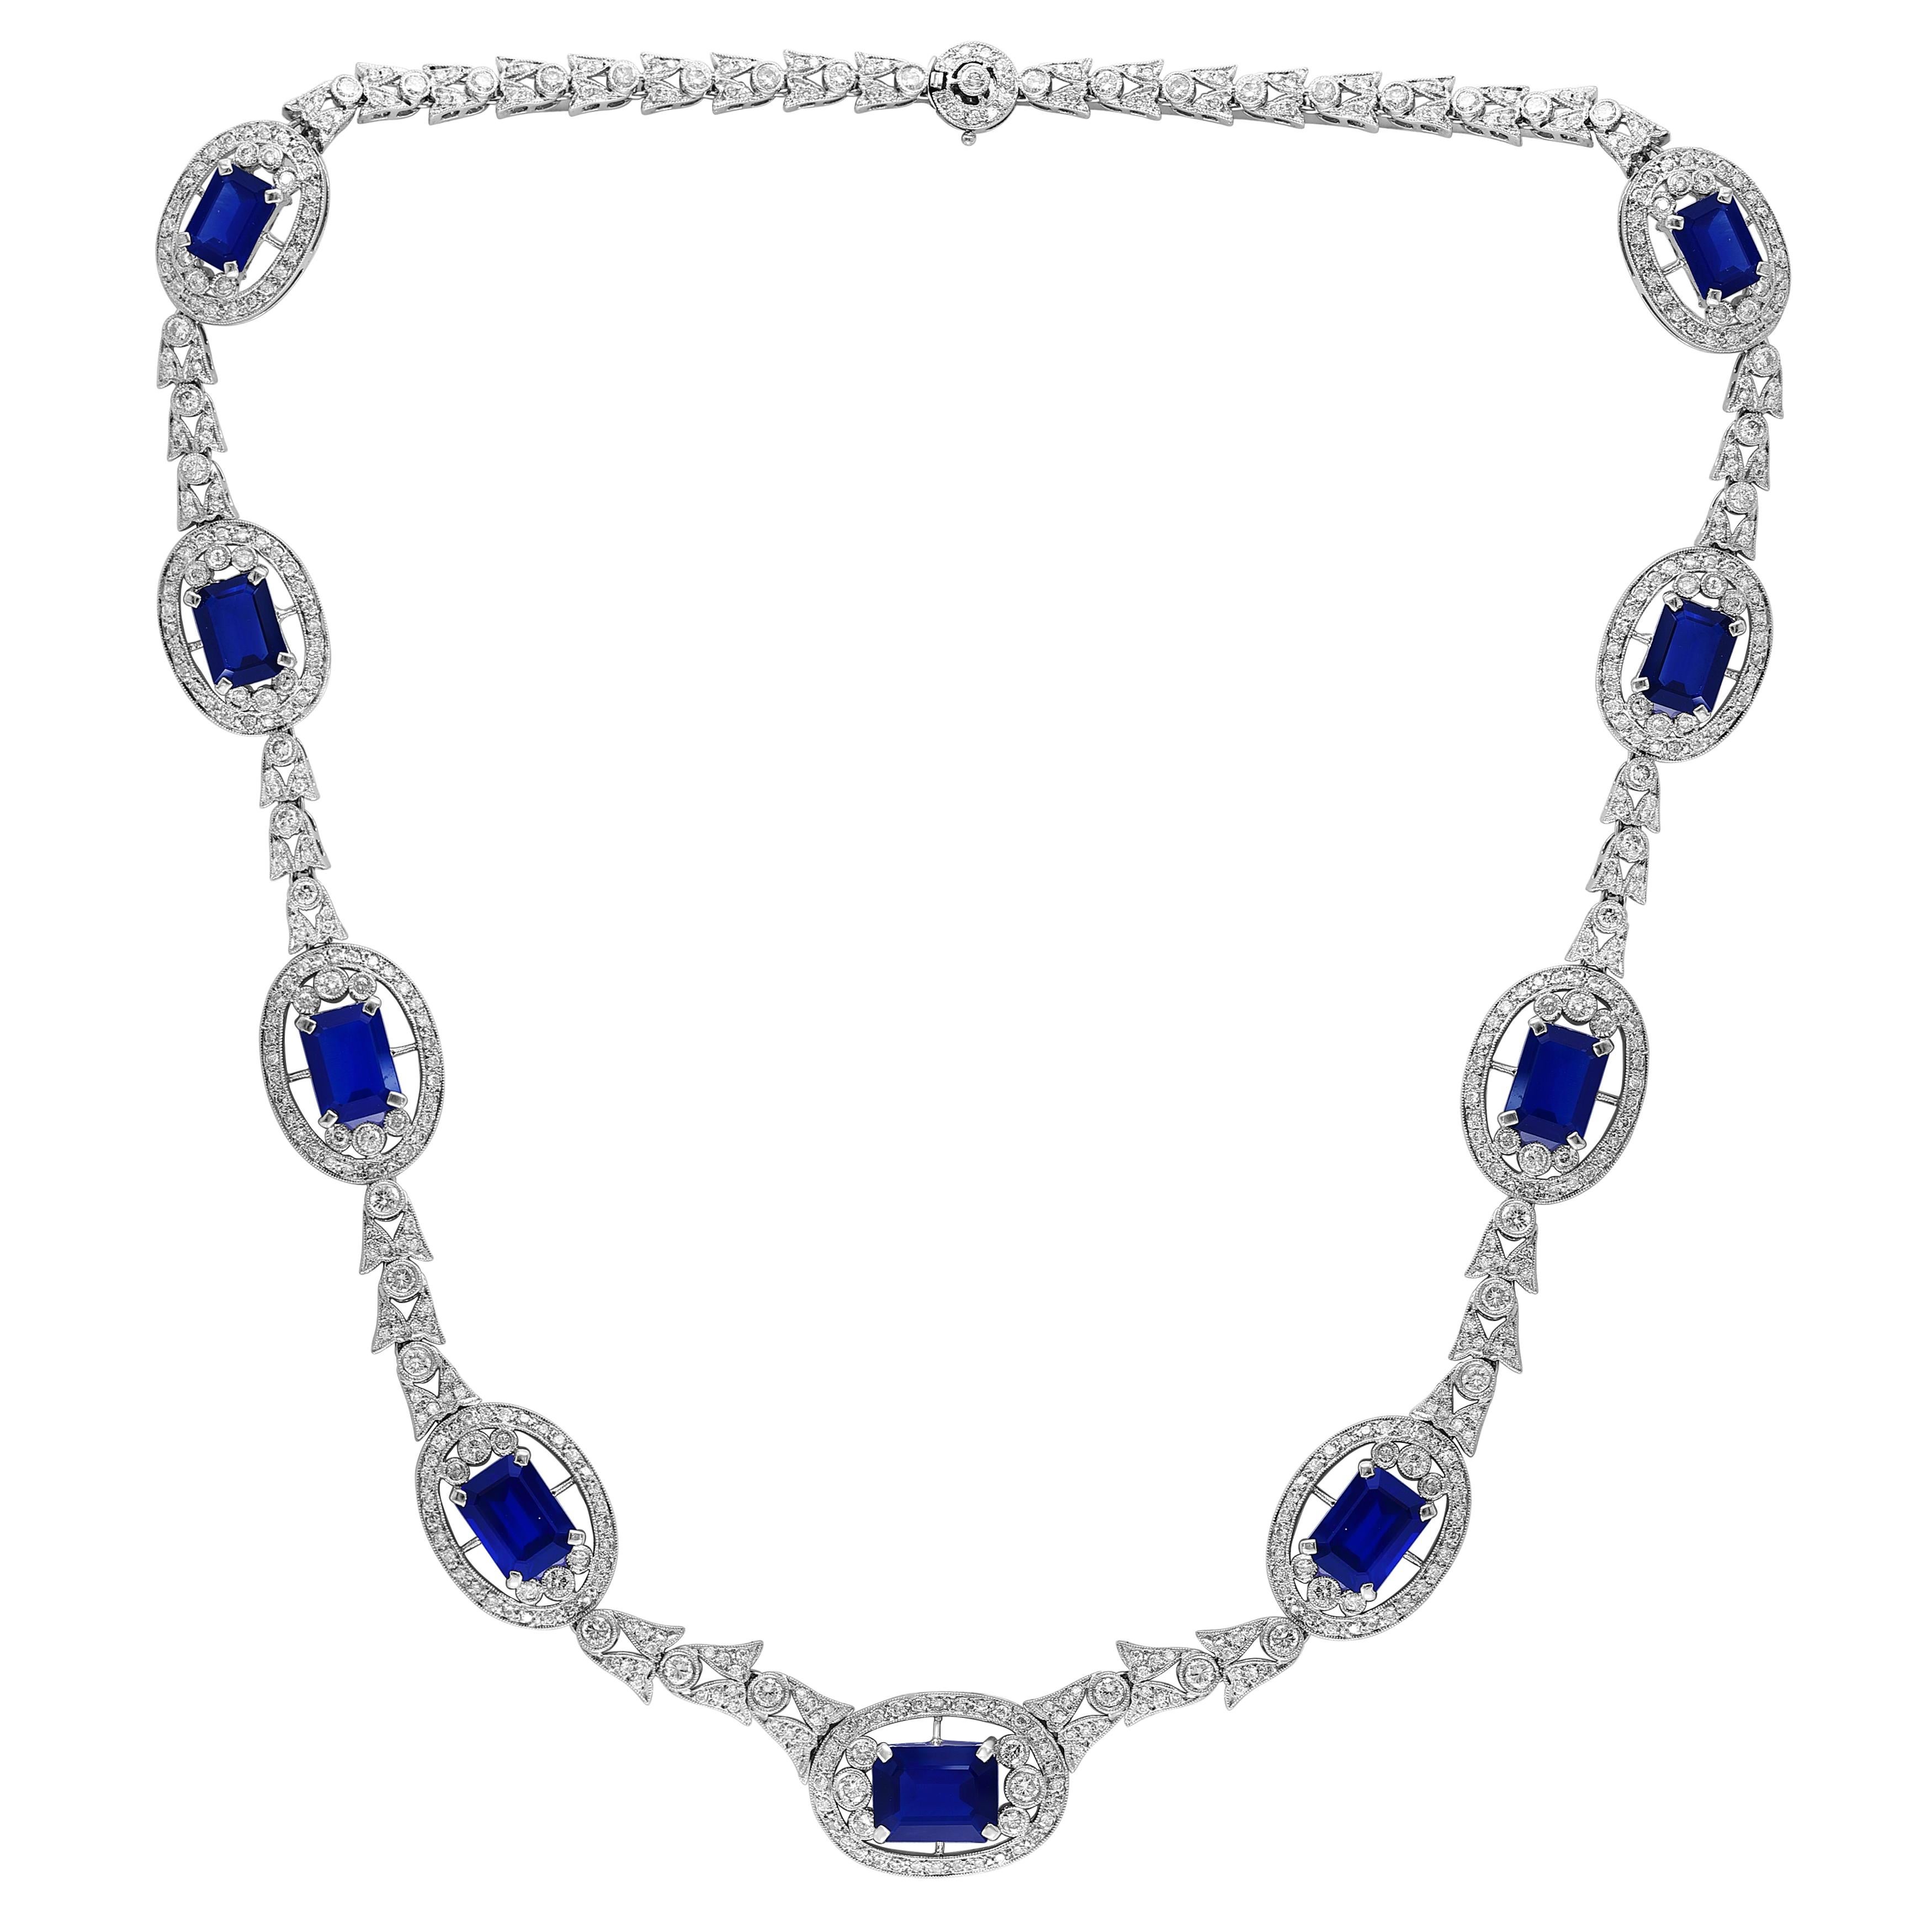 
GIA zertifiziert natürlichen blauen Saphir & Diamant-Halskette 18 Kt Weißgold, Estate
GIA-Bericht # 2225370708
natürlicher Saphir
Herkunft Thailand 
Diese Halskette ist aus 18 Karat Gold gefertigt.
Halskette bestehend aus  9 Smaragdschliff